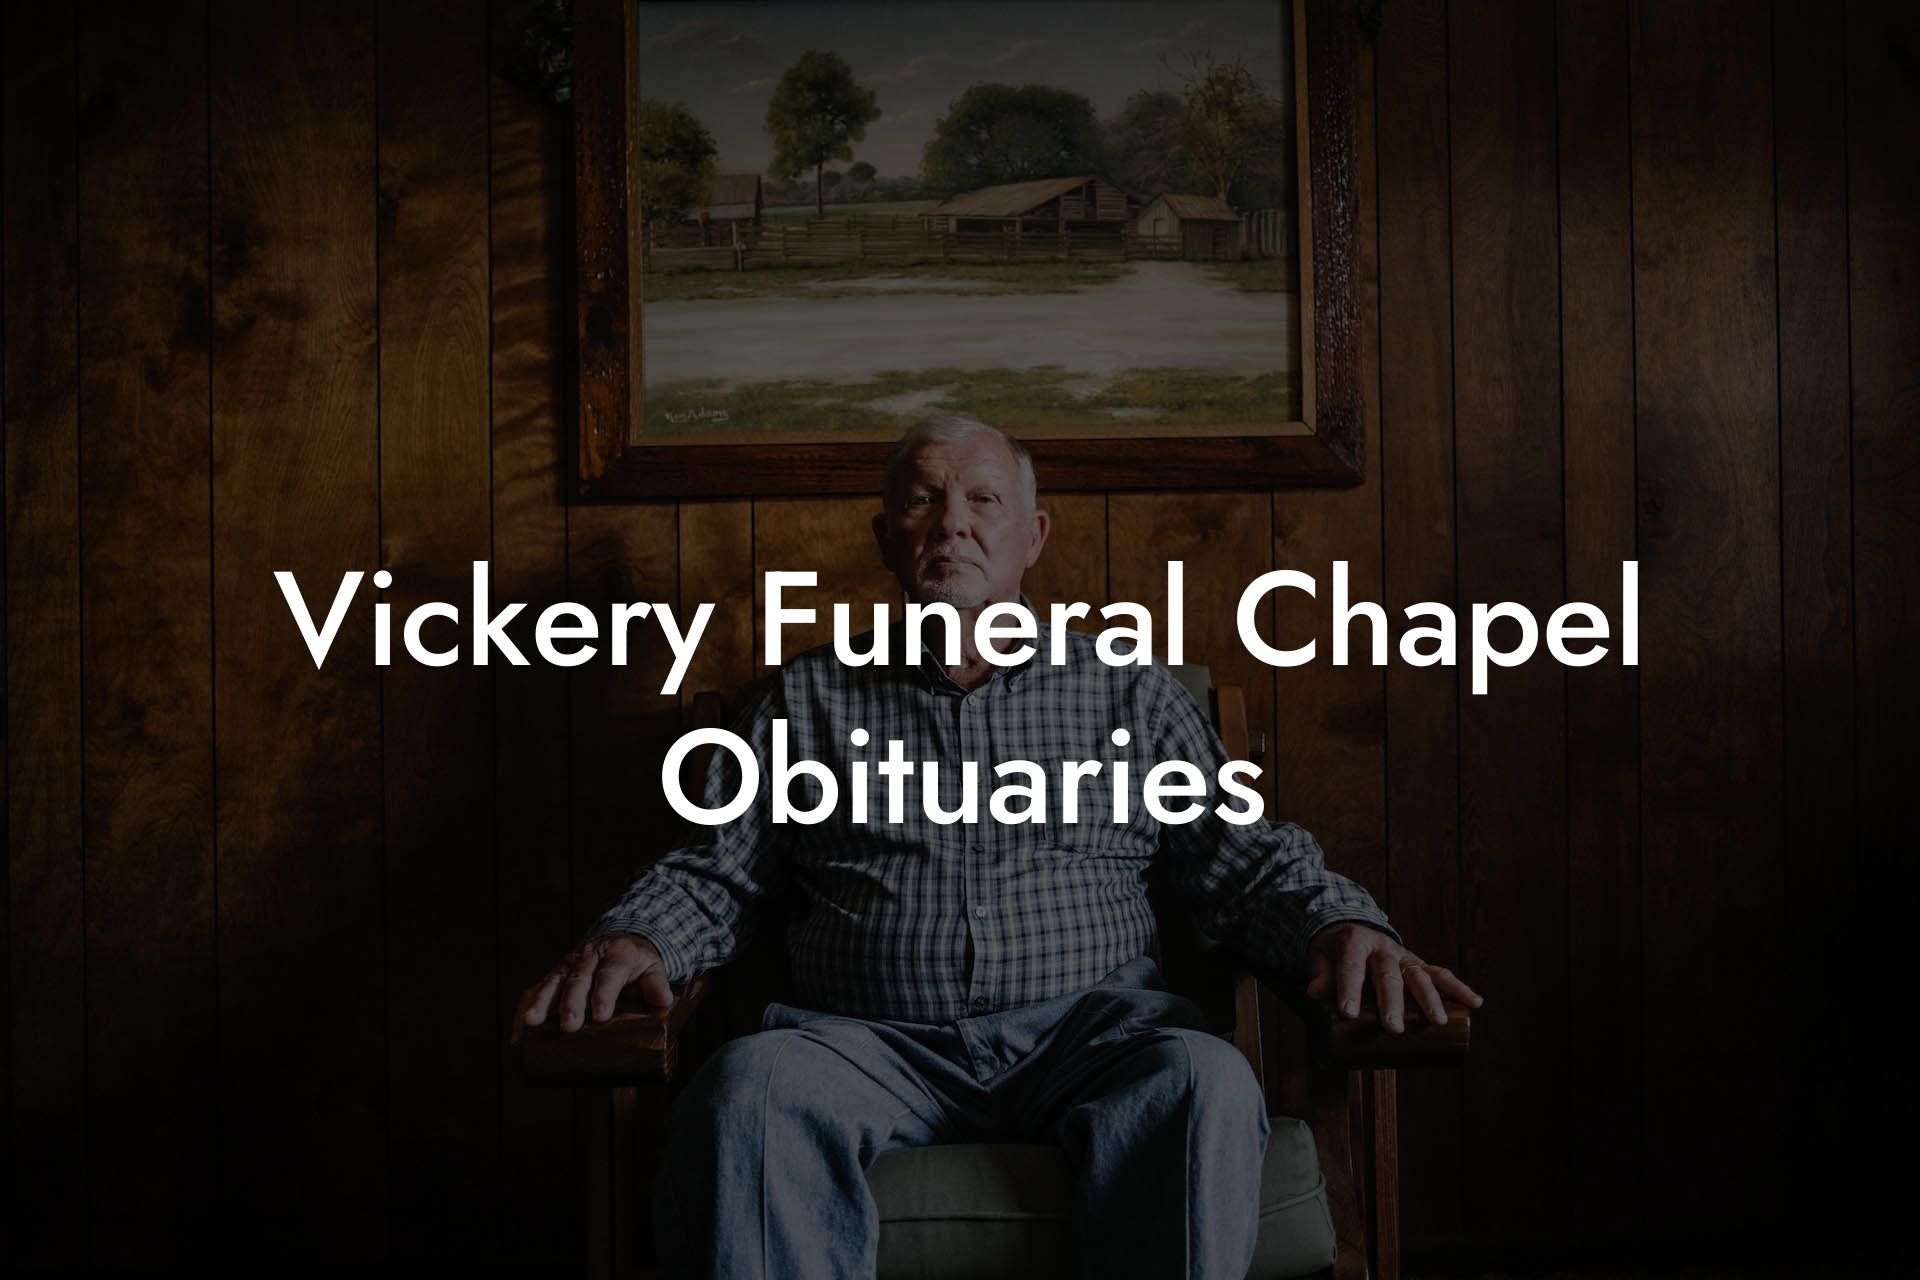 Vickery Funeral Chapel Obituaries